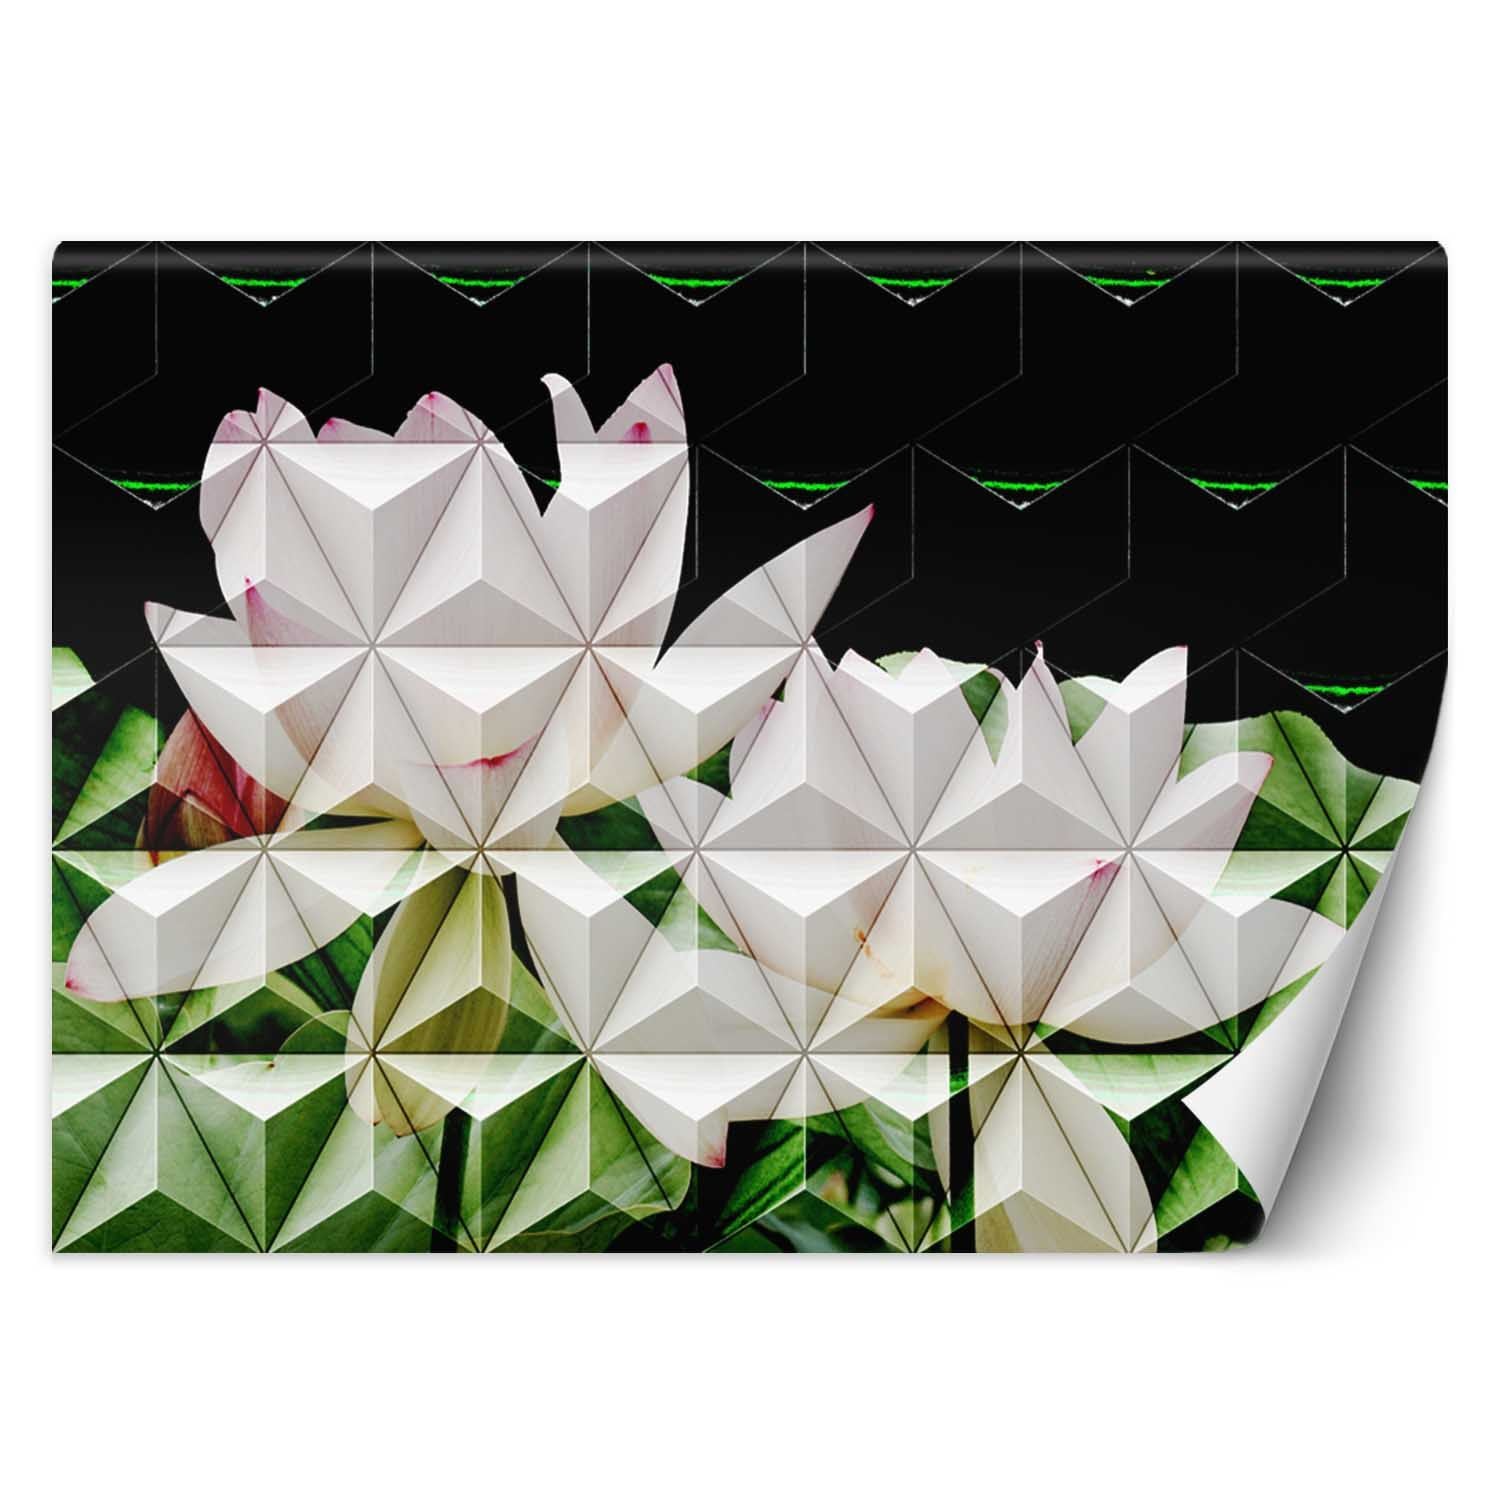 Trend24 – Behang – Geometrische Lotusbloem – Behangpapier – Behang Woonkamer – Fotobehang – 450x315x2 cm – Incl. behanglijm